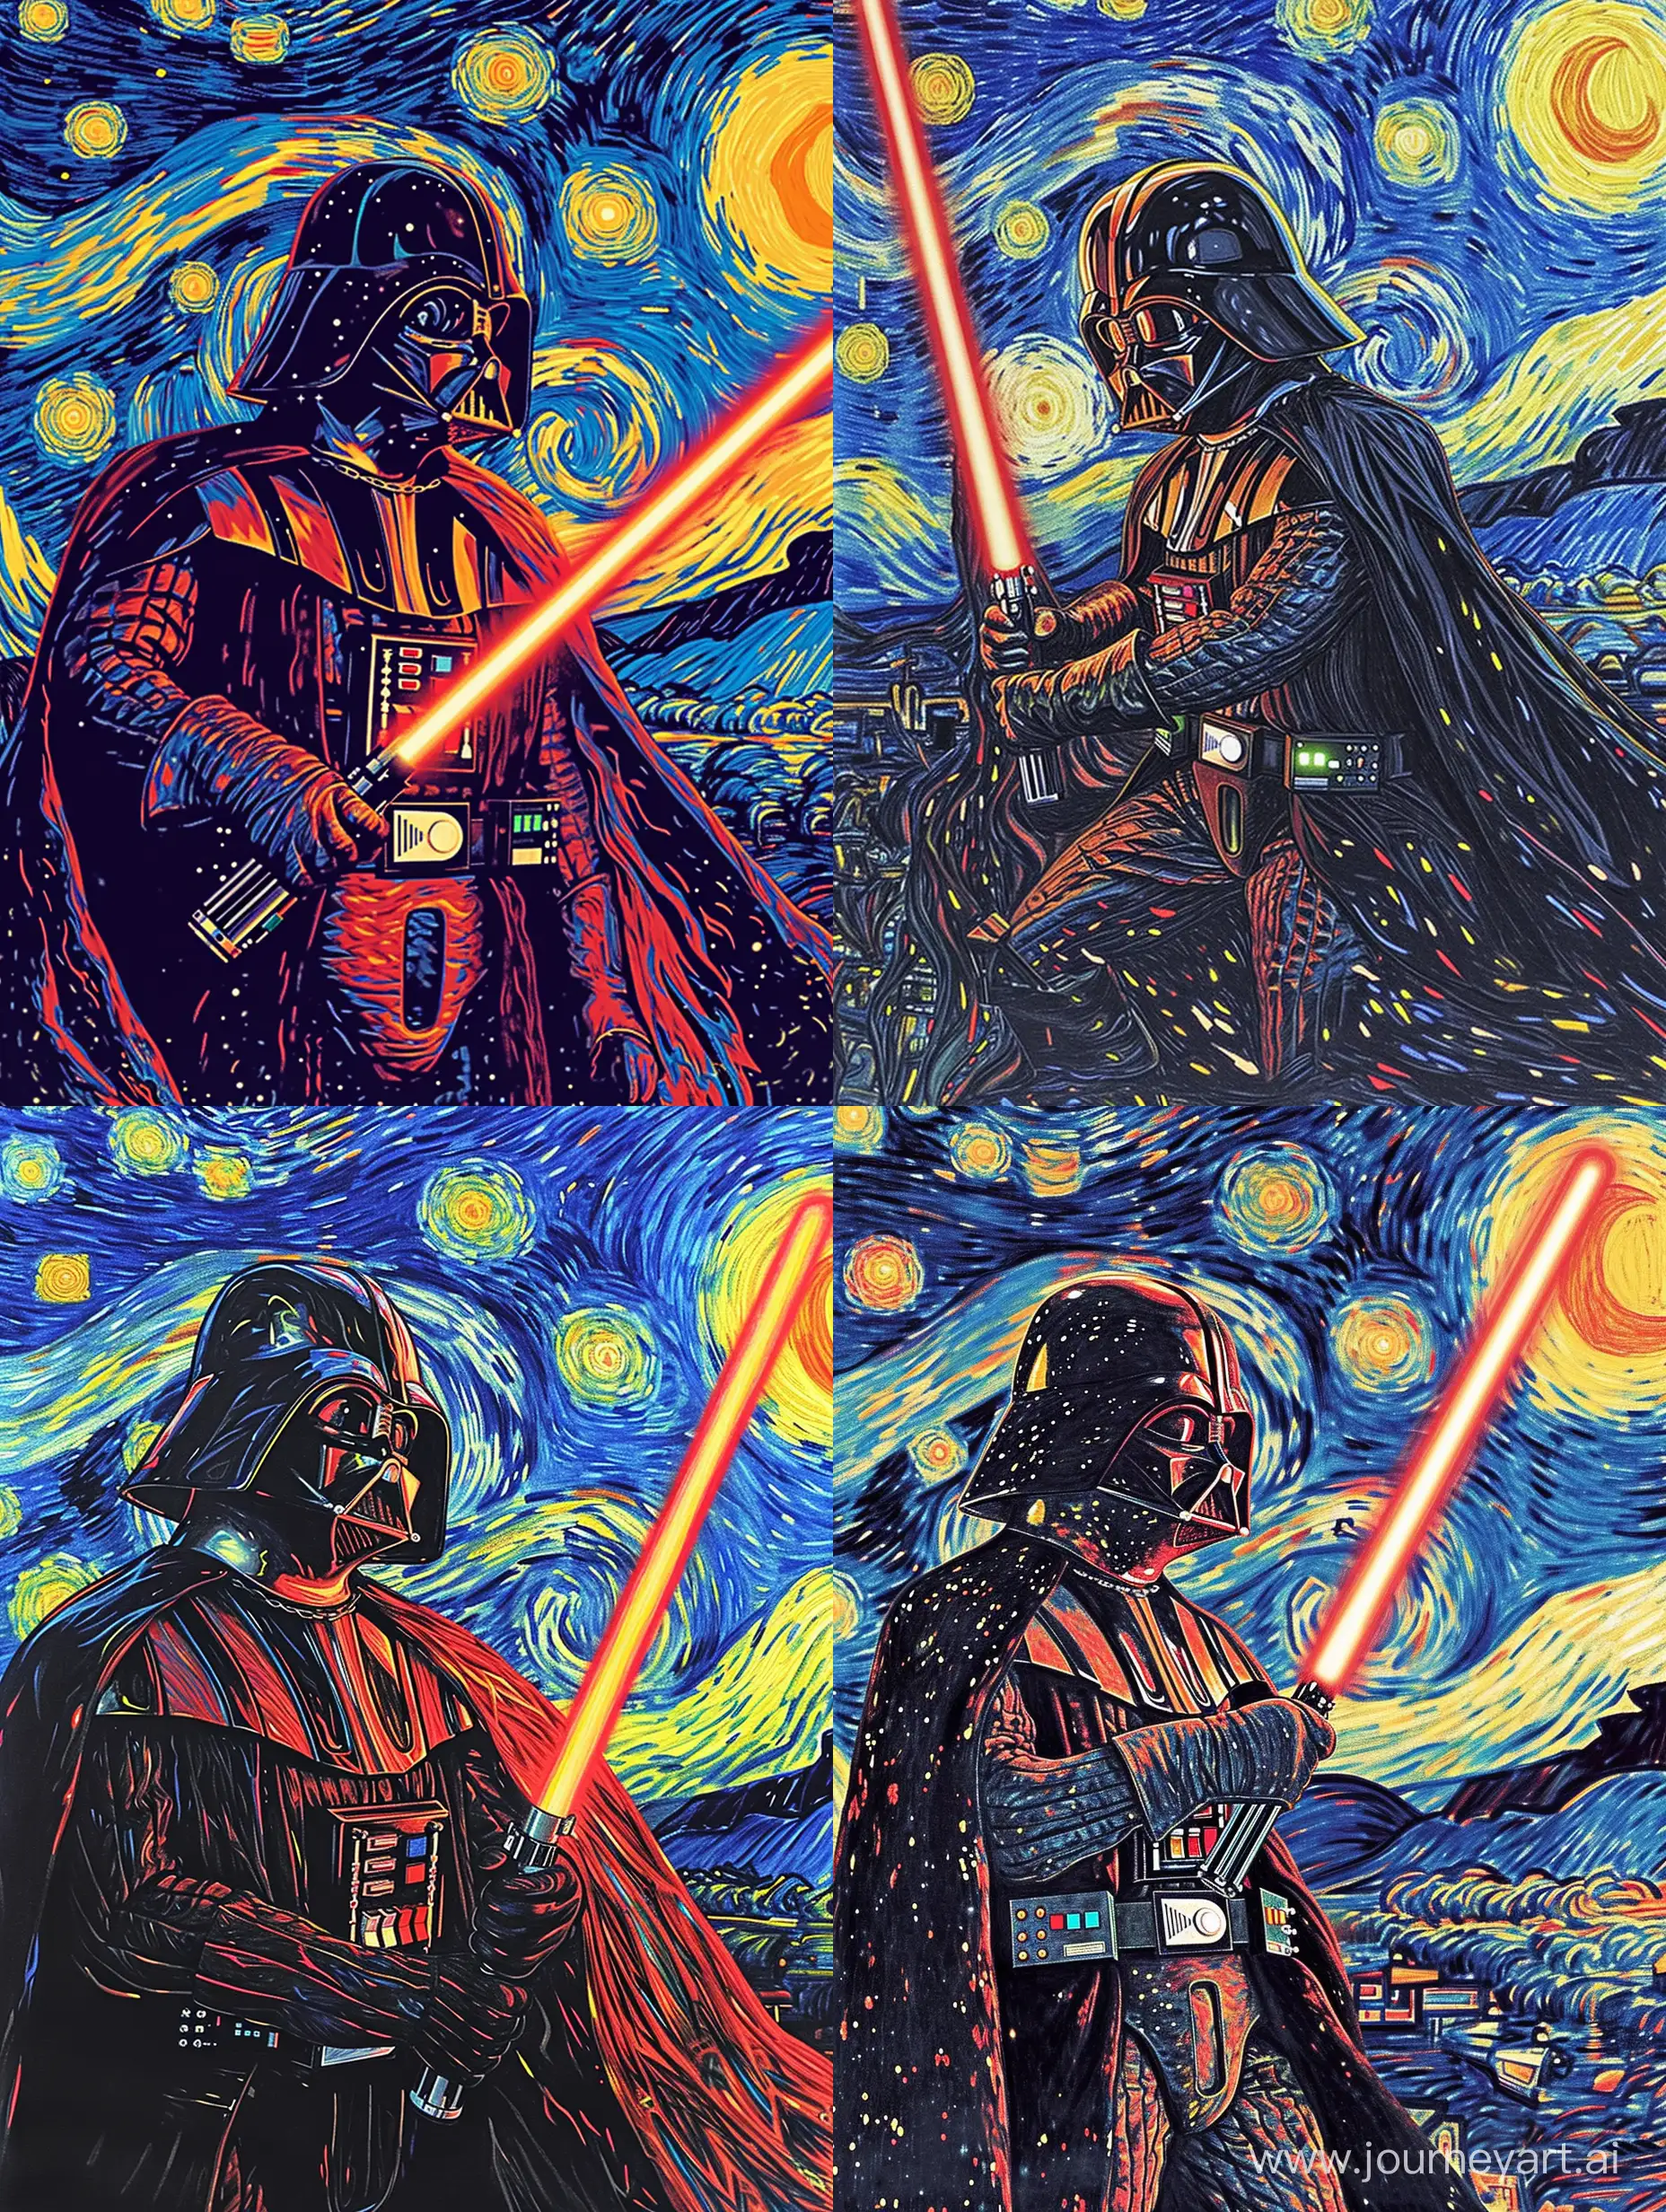 Darth-Vader-Lightsaber-Night-Sky-Art-in-Van-Gogh-Style